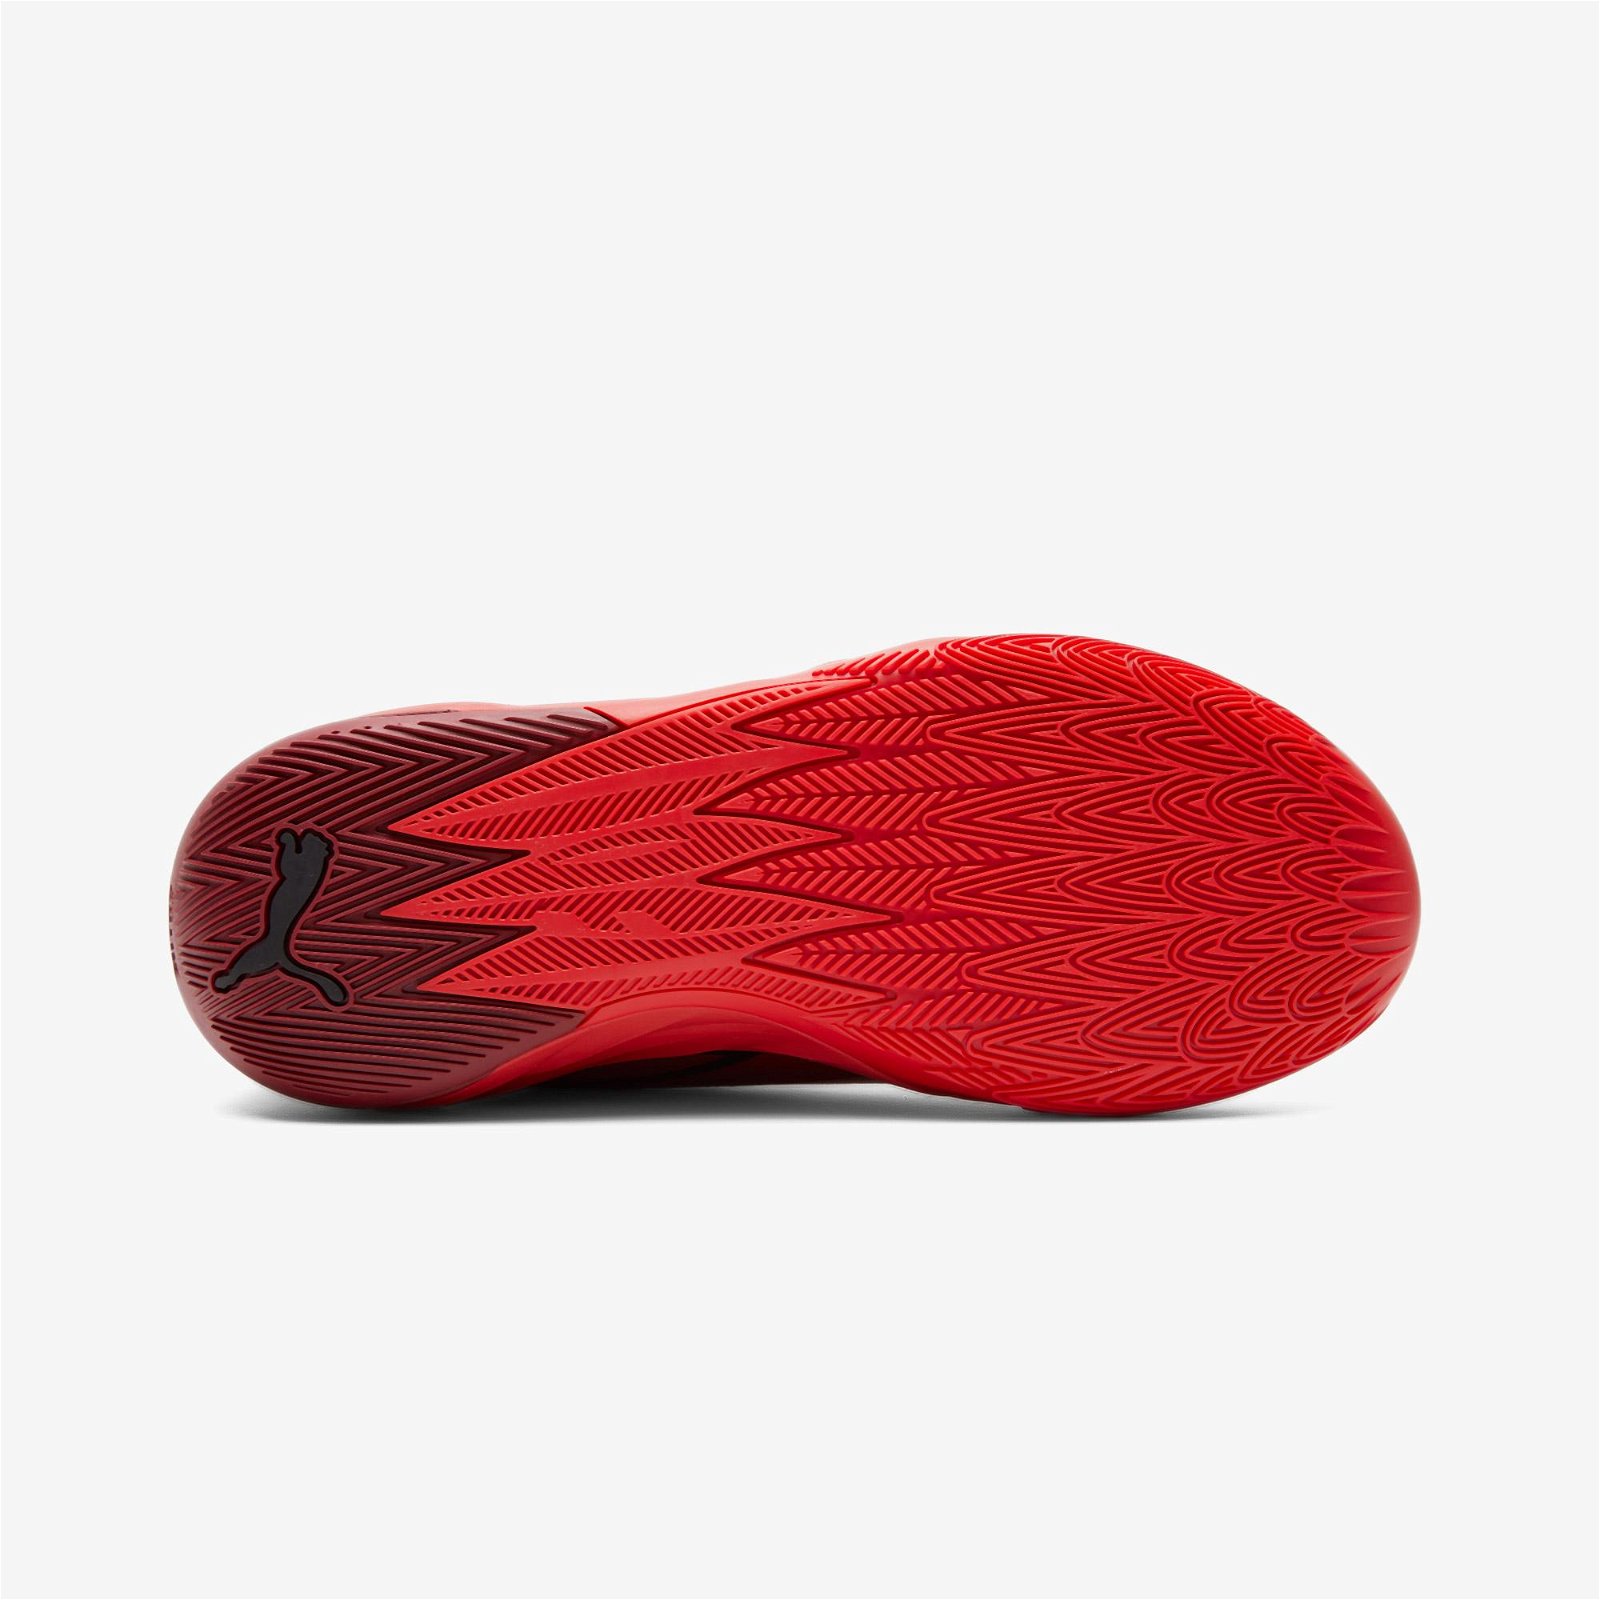 Puma MB.02 Erkek Kırmızı Spor Ayakkabı